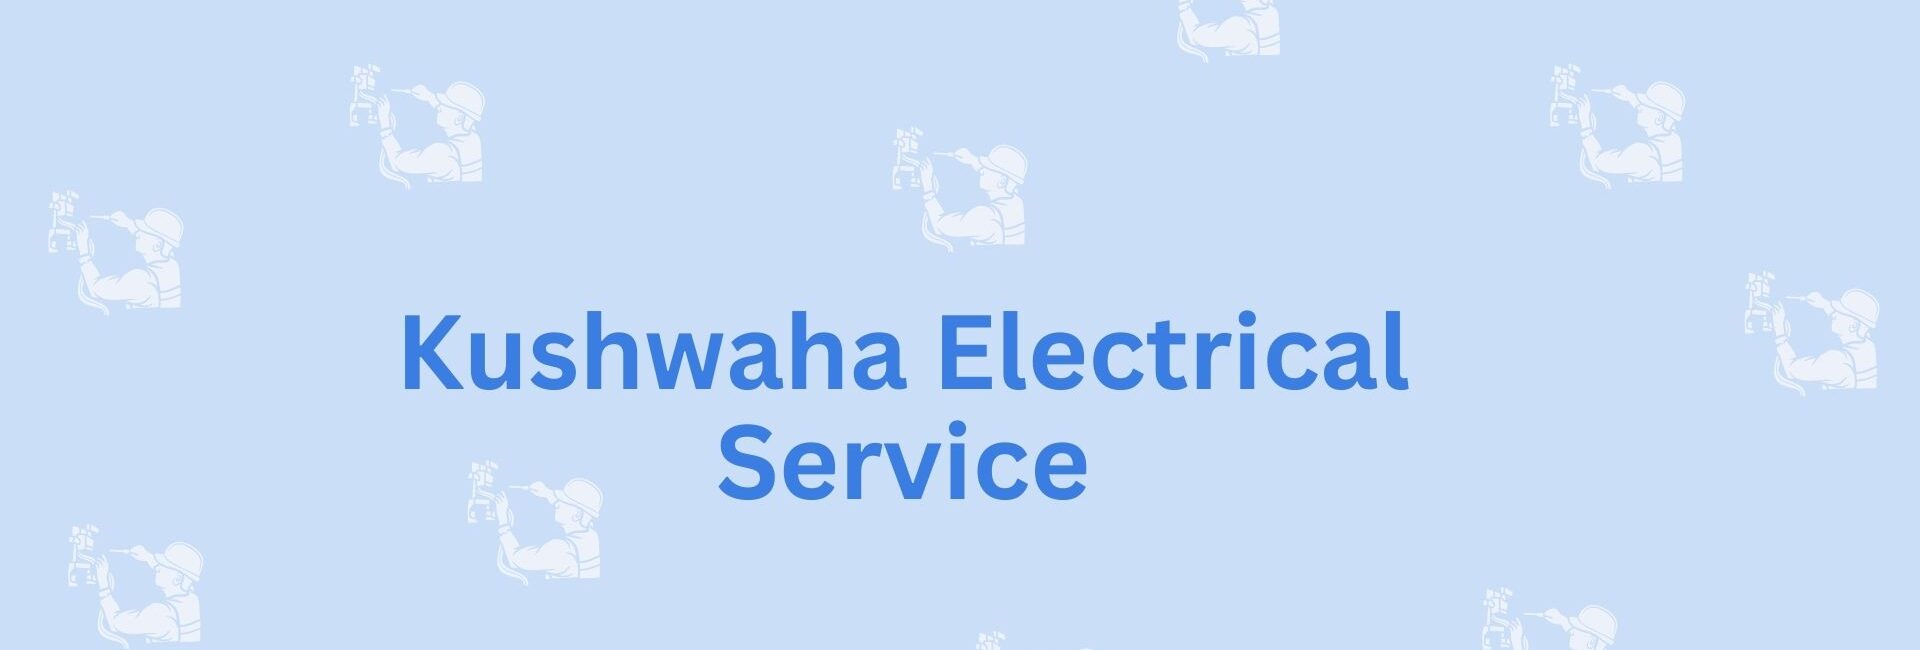 Kushwaha Electrical Service